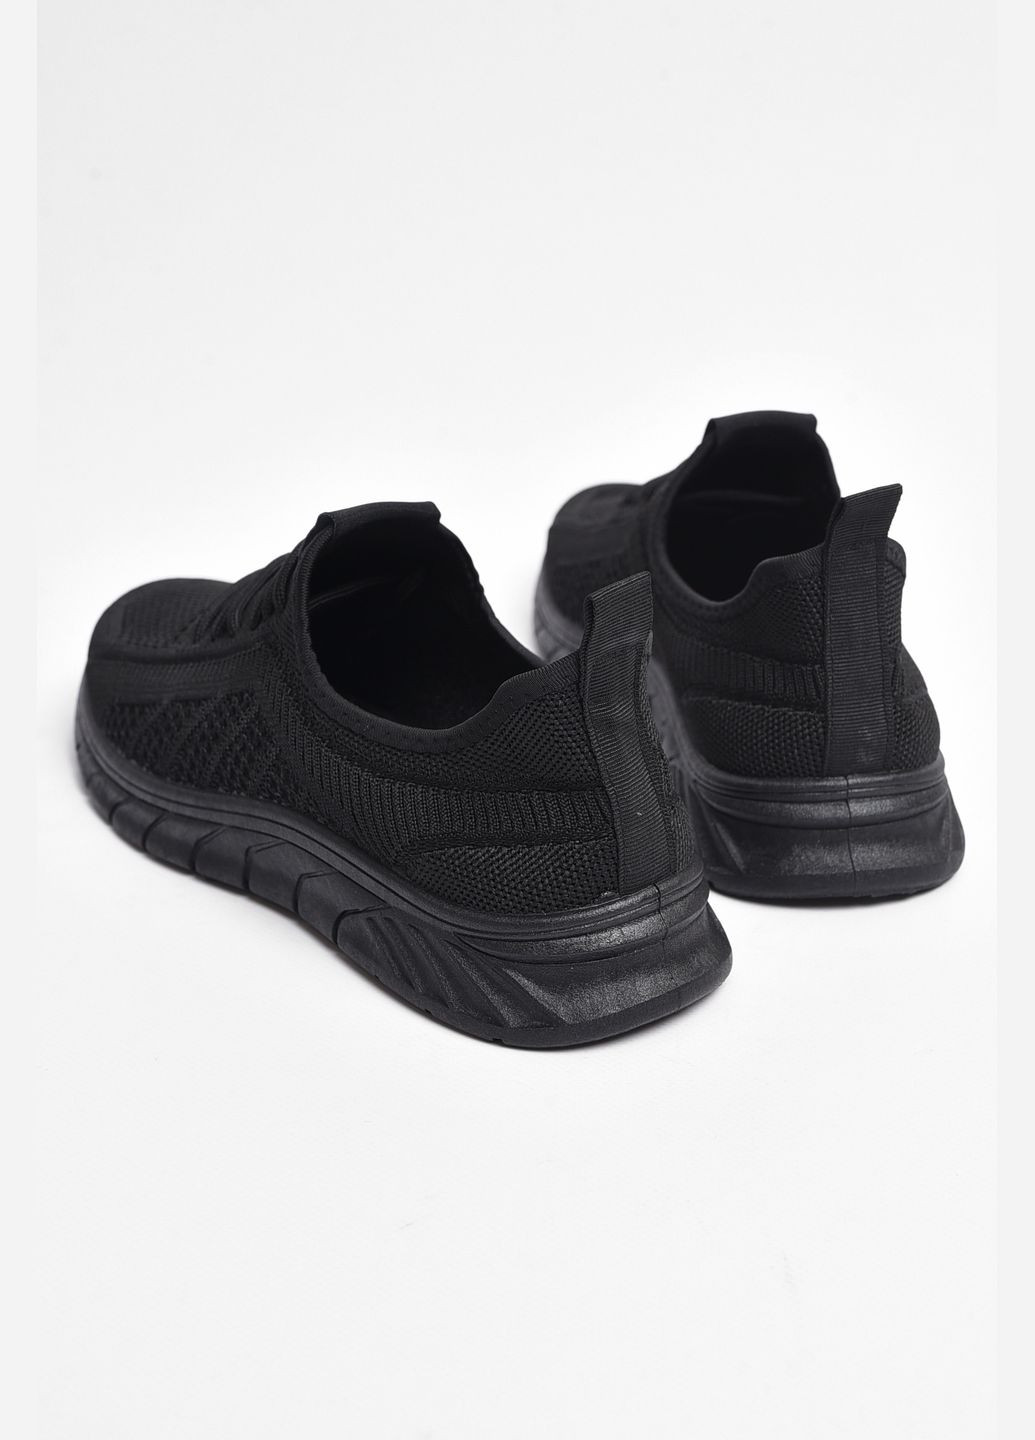 Черные демисезонные кроссовки мужские текстиль черного цвета Let's Shop